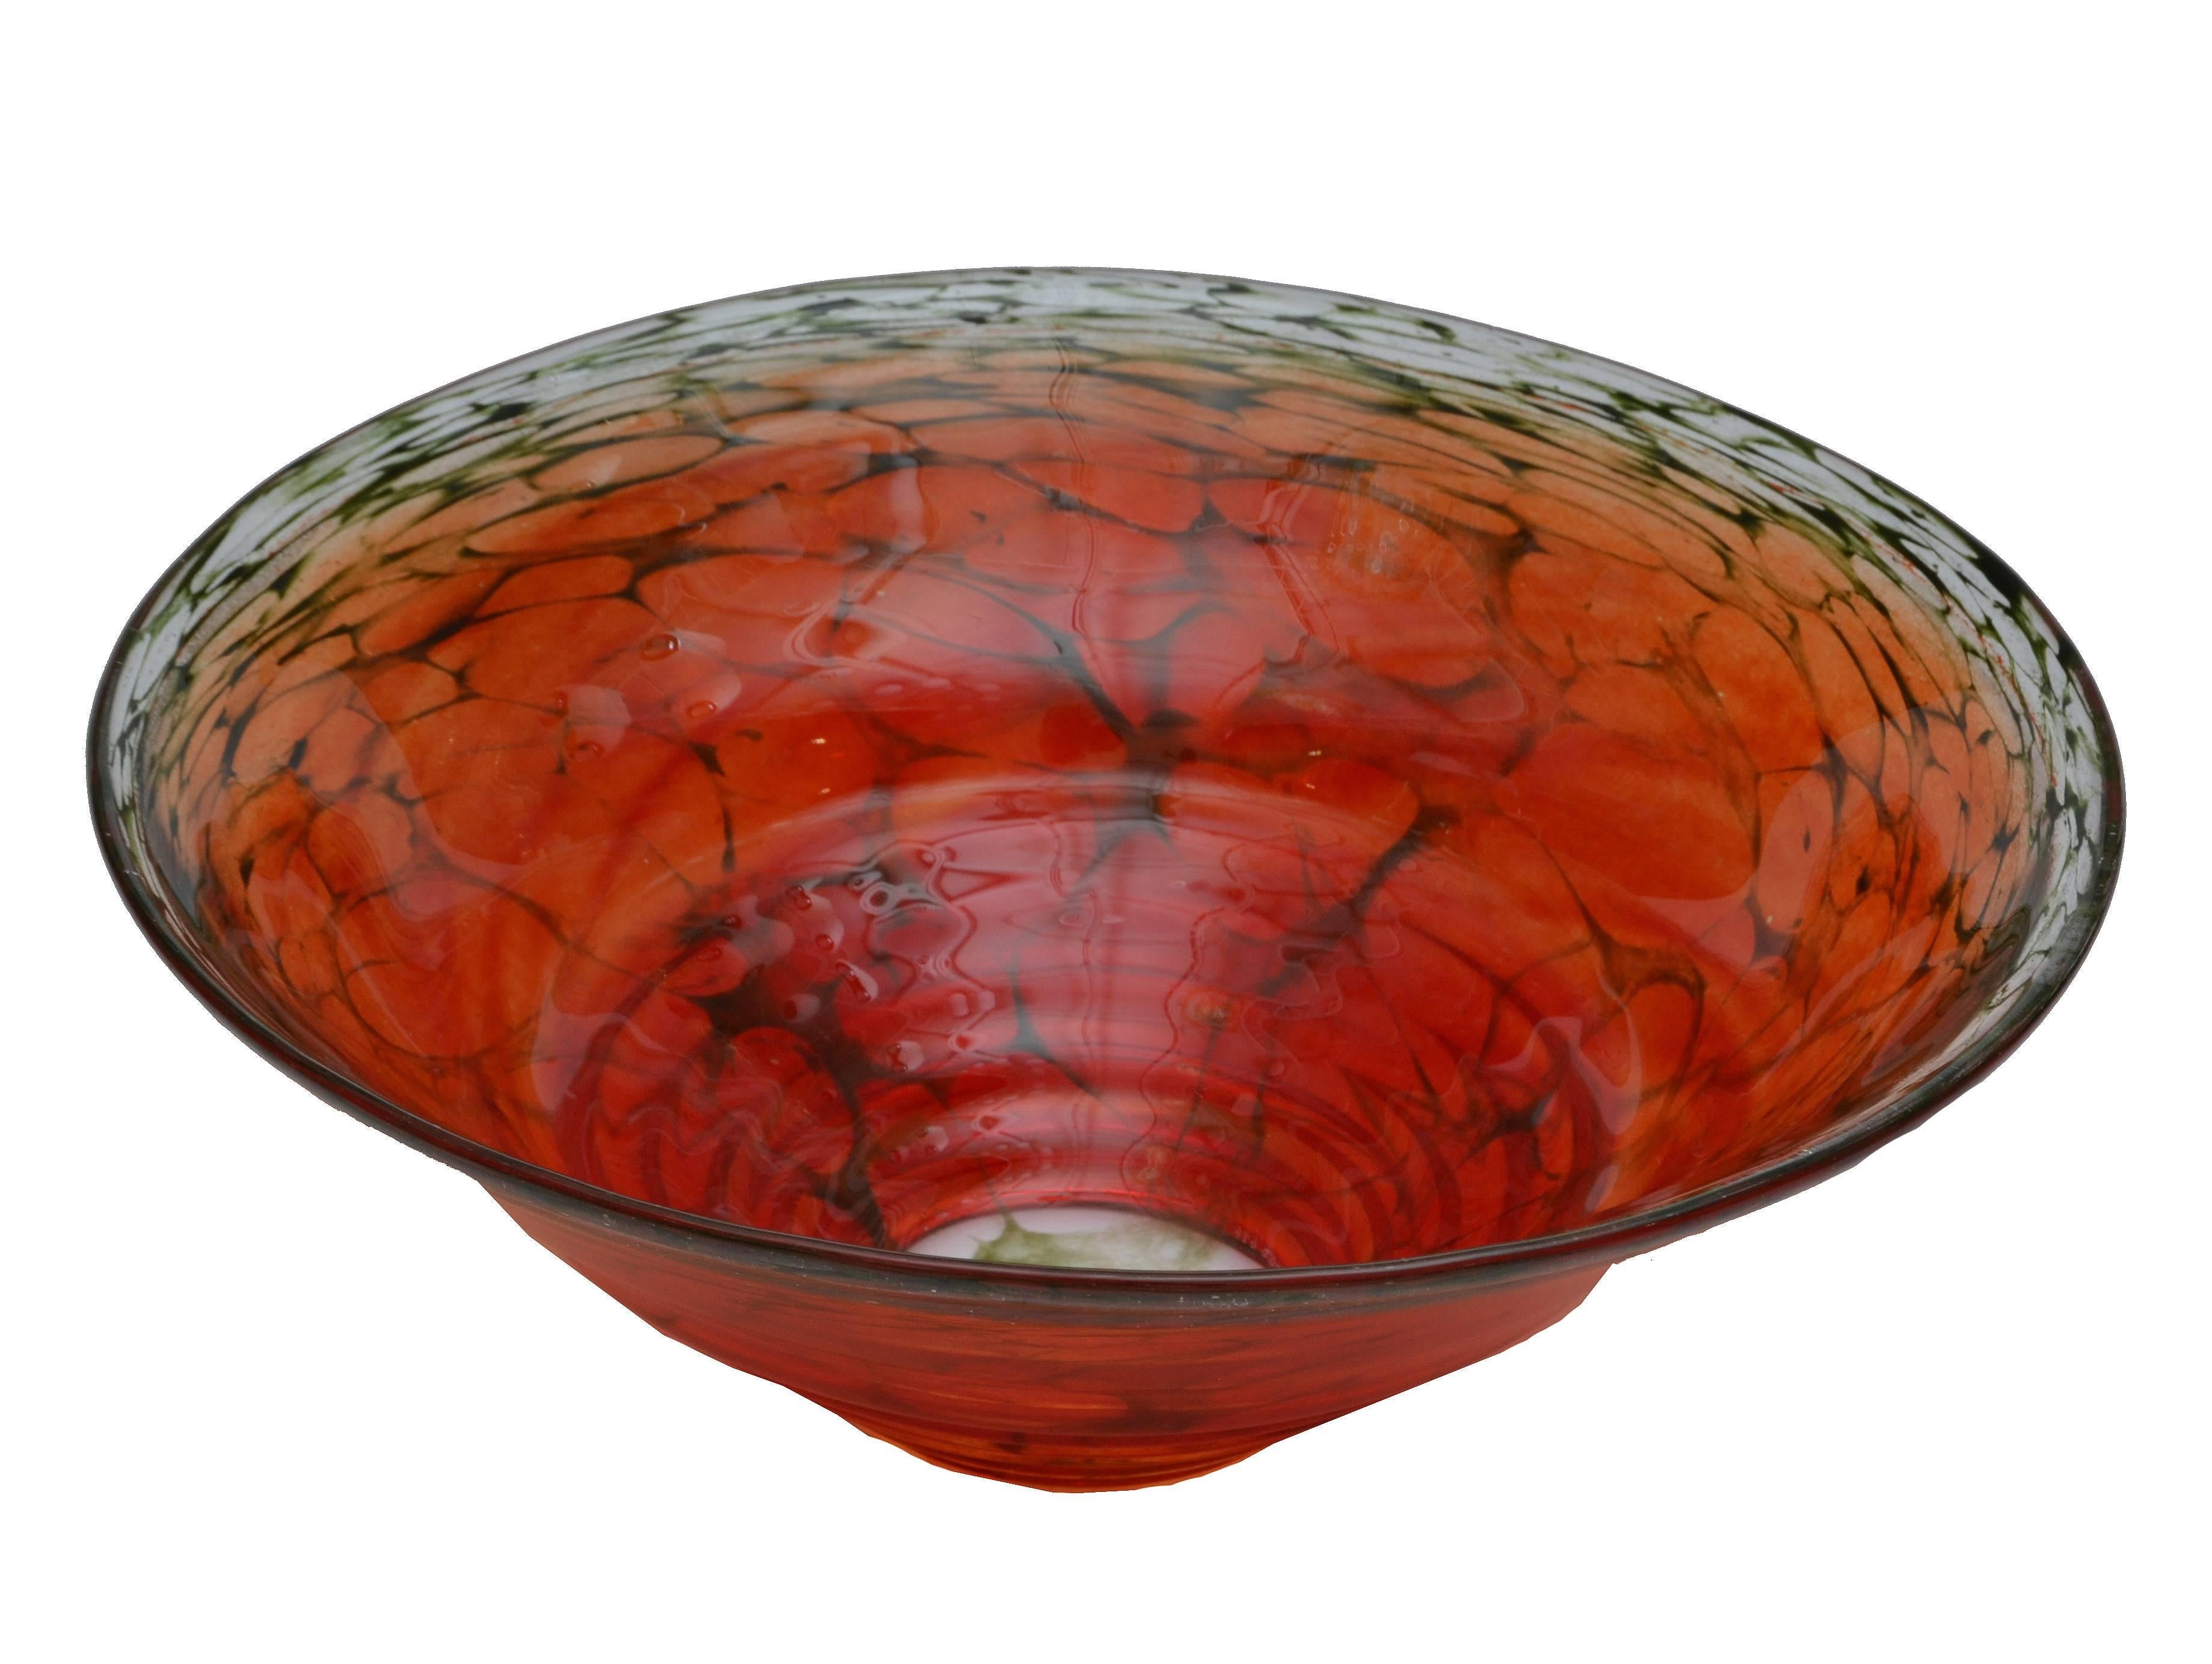 Artist's Choice from Kosta Boda Red Art Glass Bowl Signed by Kjell Engman 1